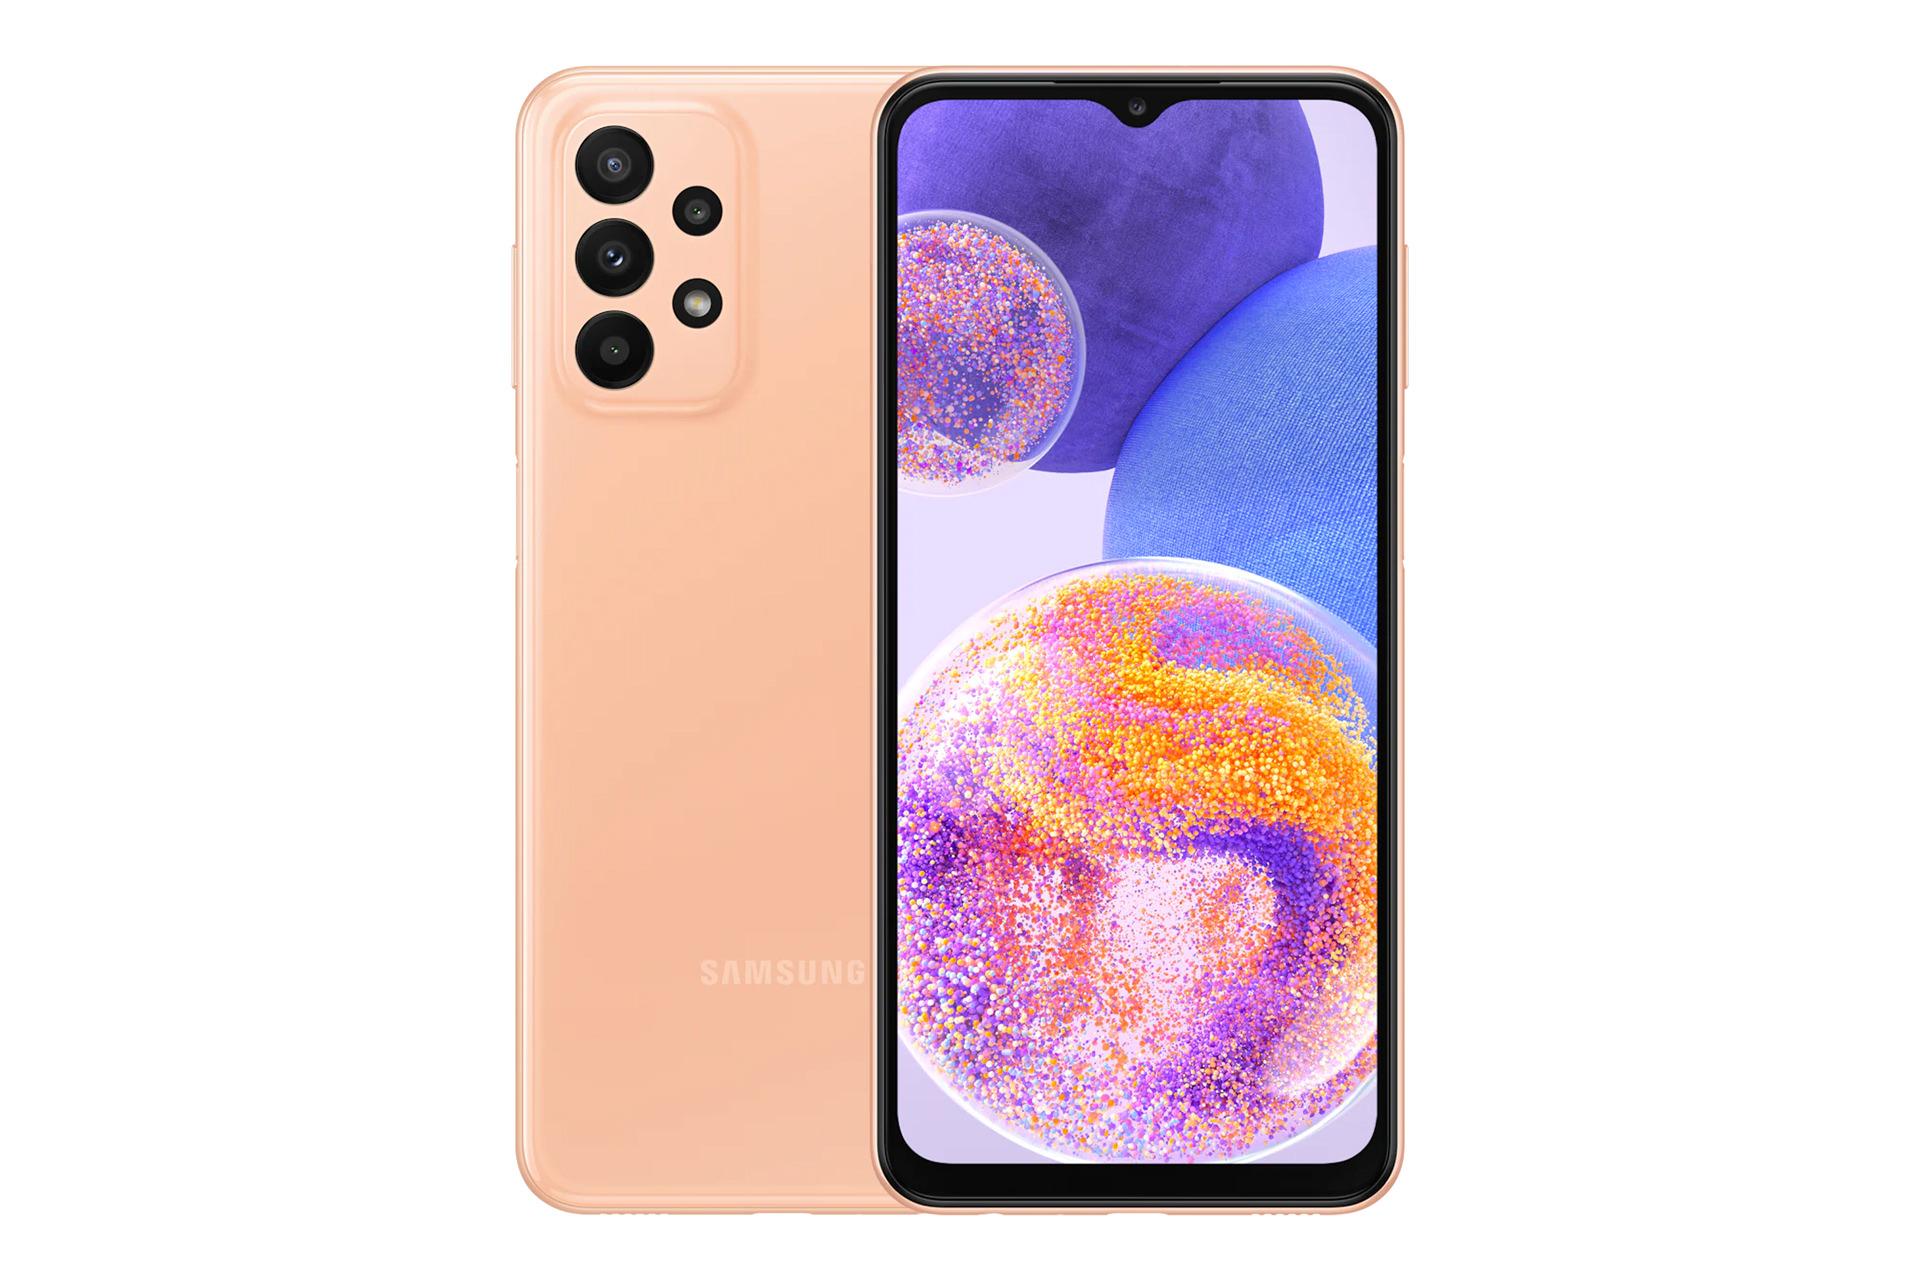 نمای کلی گوشی موبایل گلکسی A23 سامسونگ / Samsung Galaxy A23 با نمایشگر روشن و نمایش لوگو و دوربین های پنل پشت رنگ گلبهی